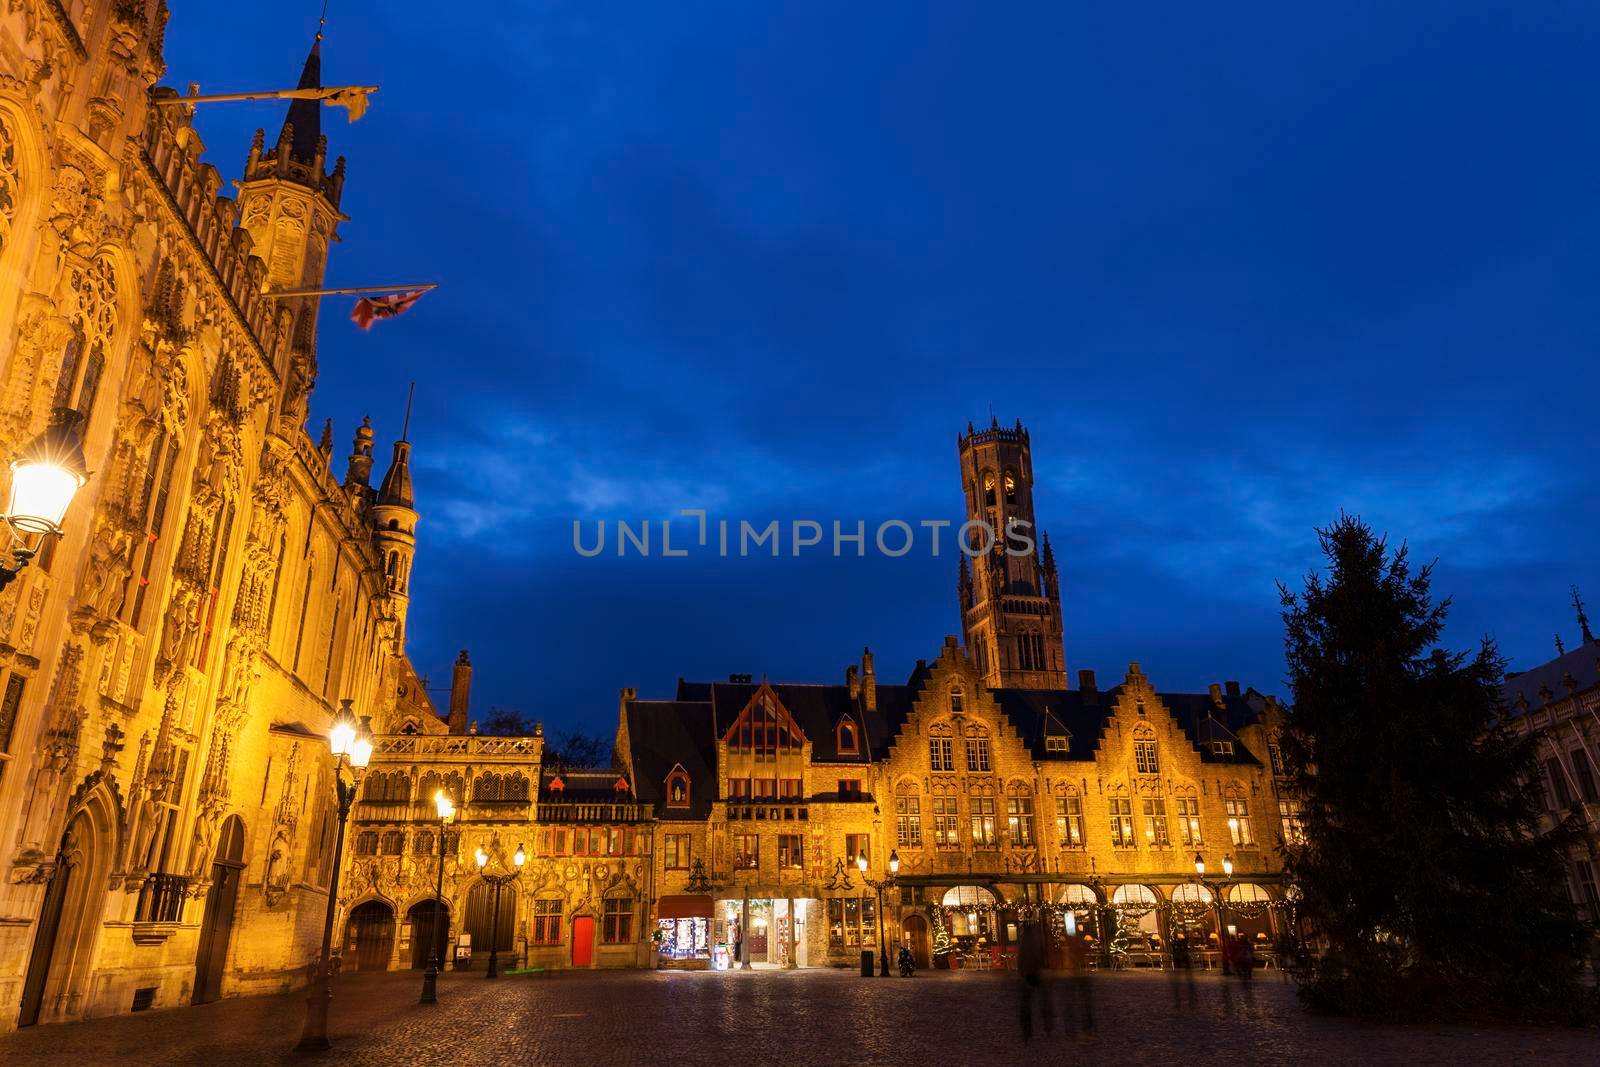 Bruges City Hall on Burg Square by benkrut